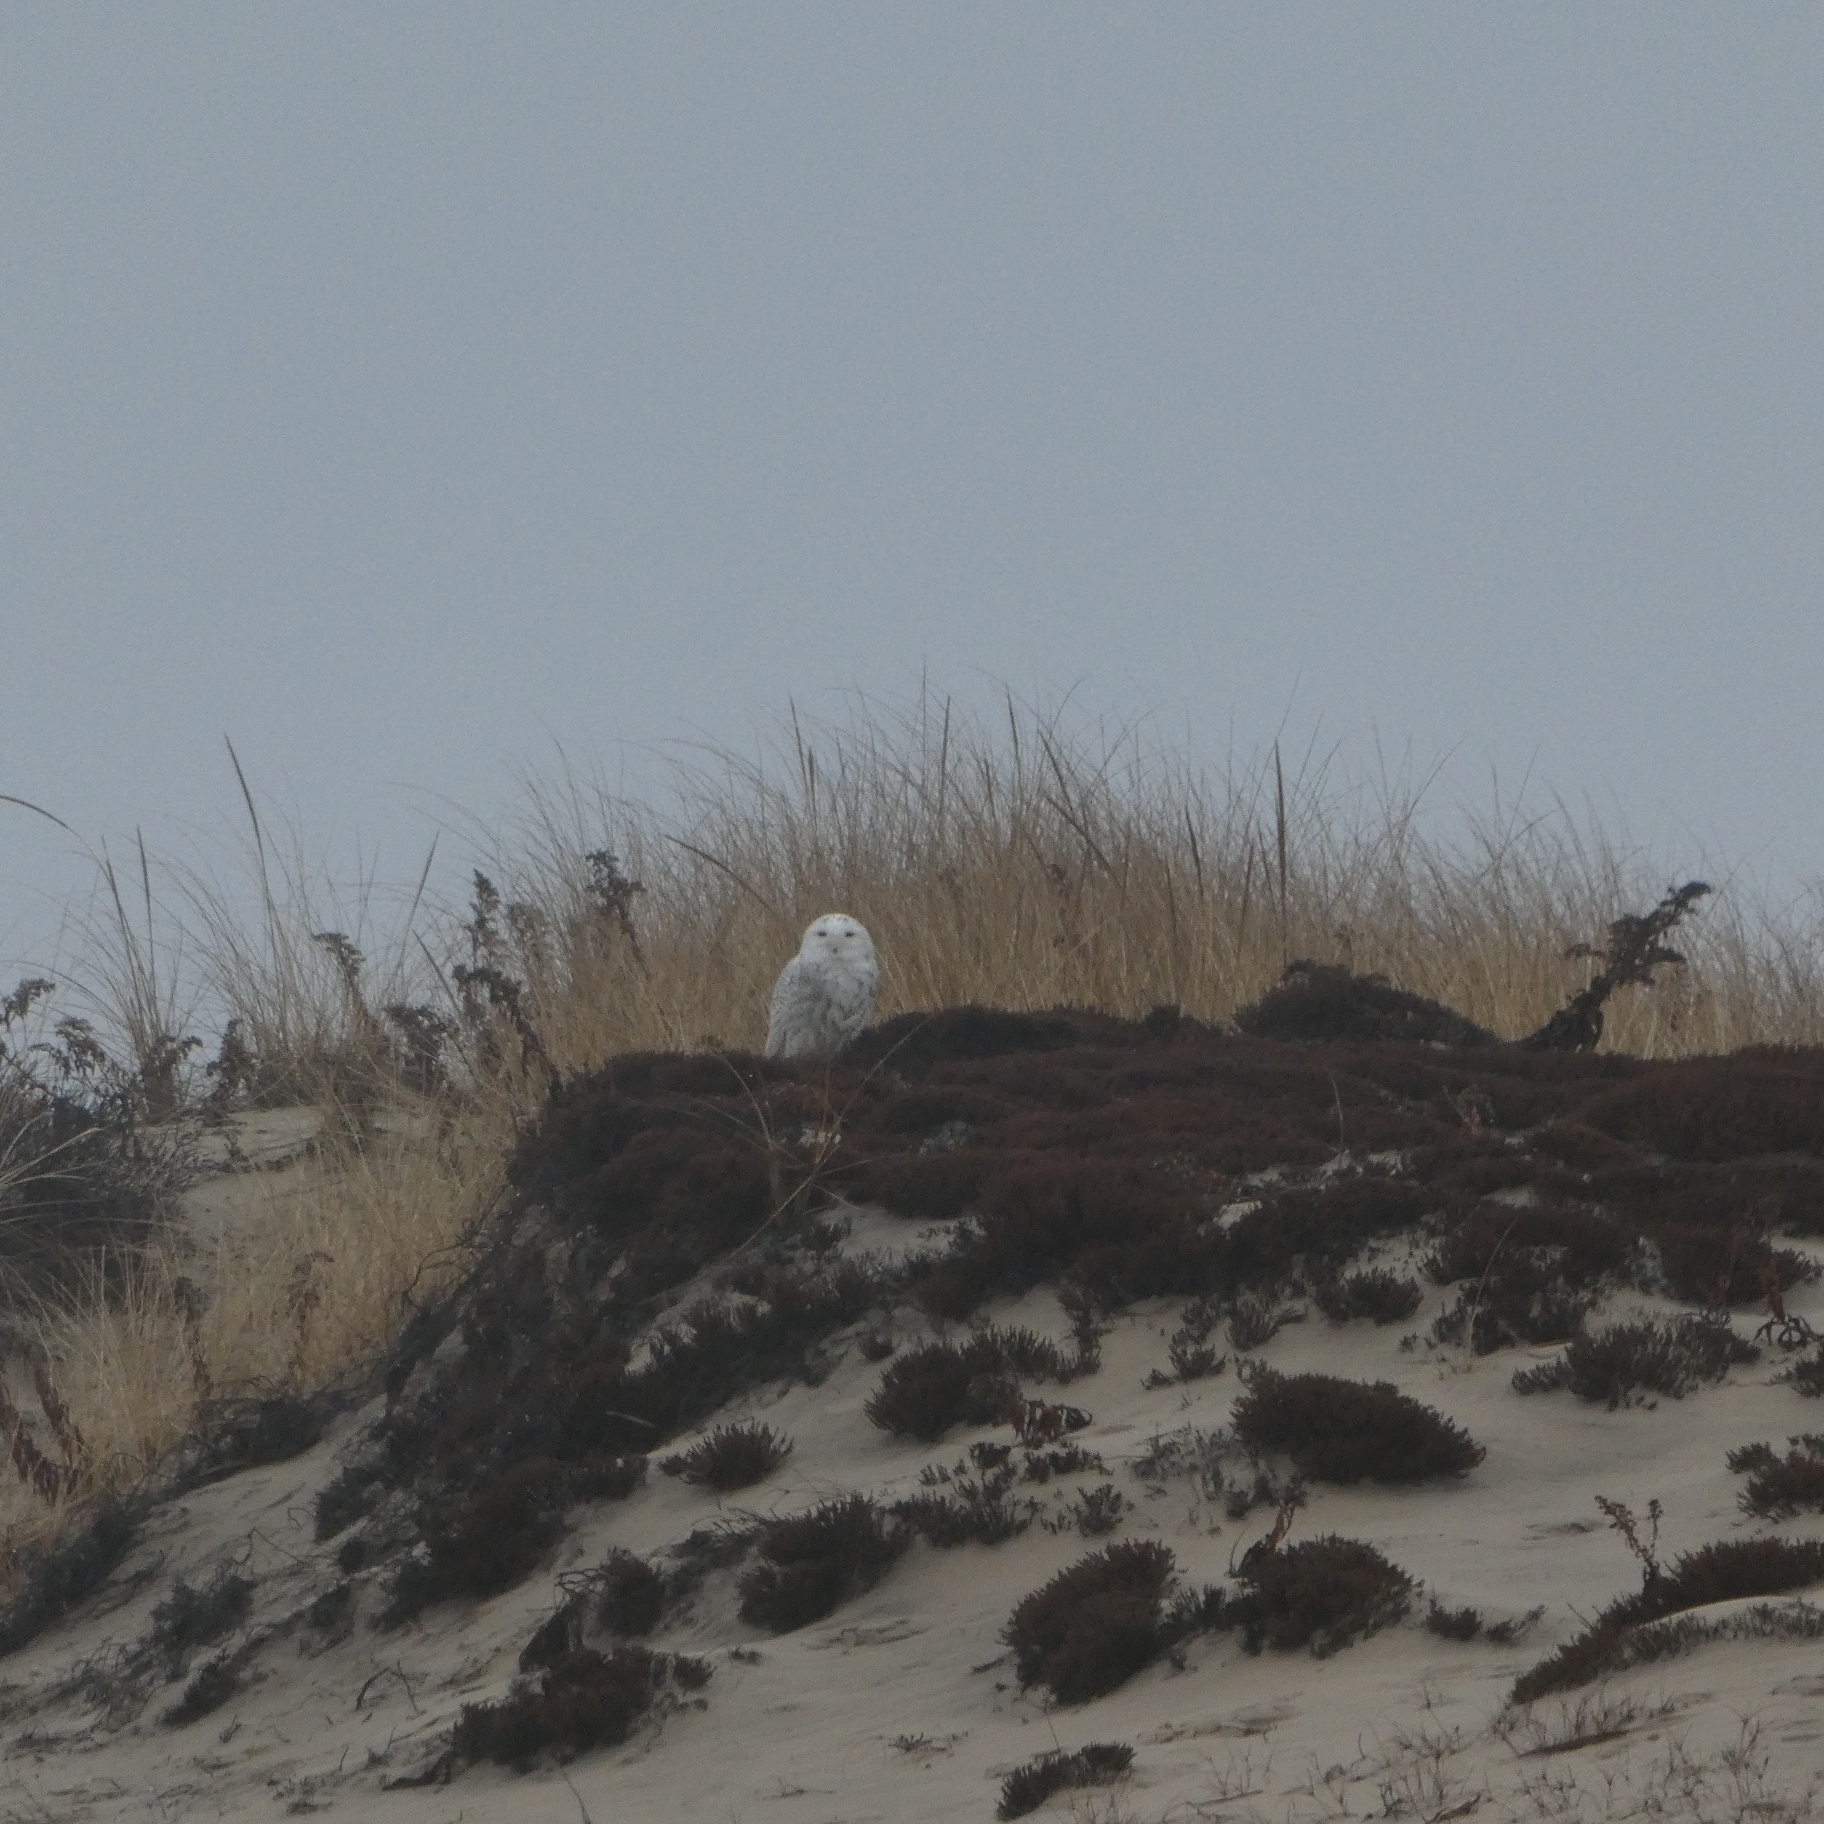 A snowy owl in the dunes. ELLEN STAHL